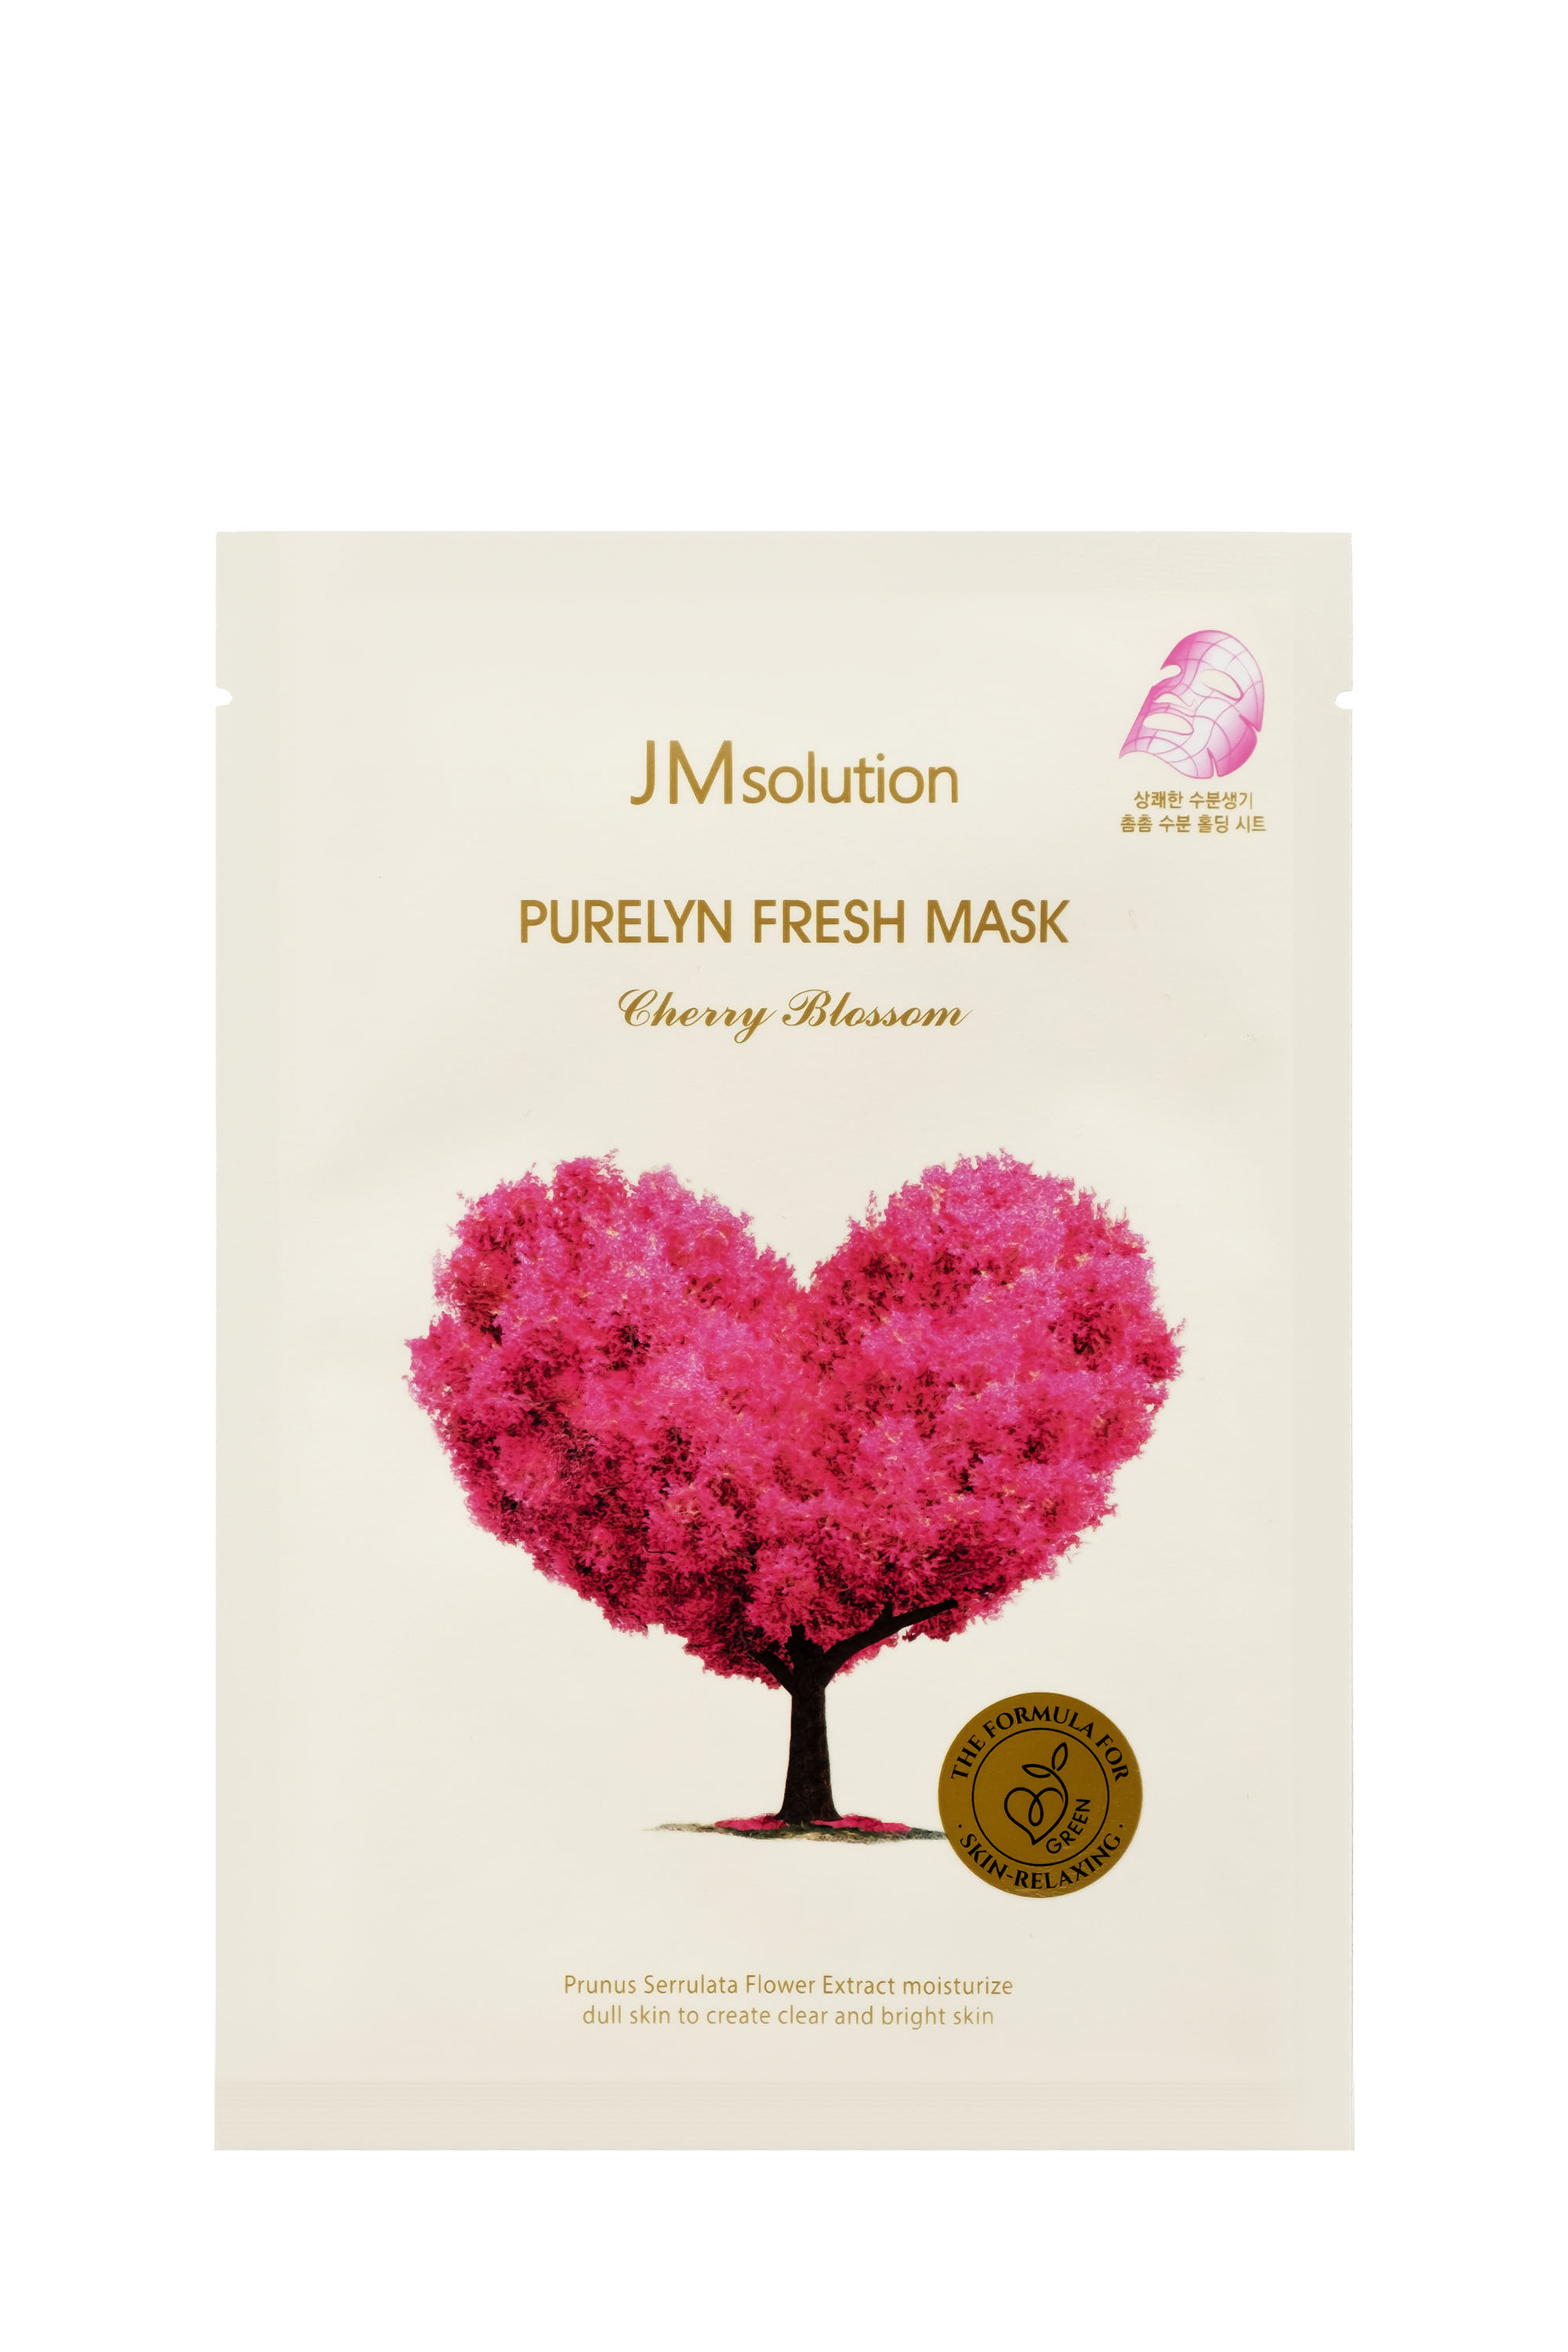  JMsolution Purelyn Fresh Mask..